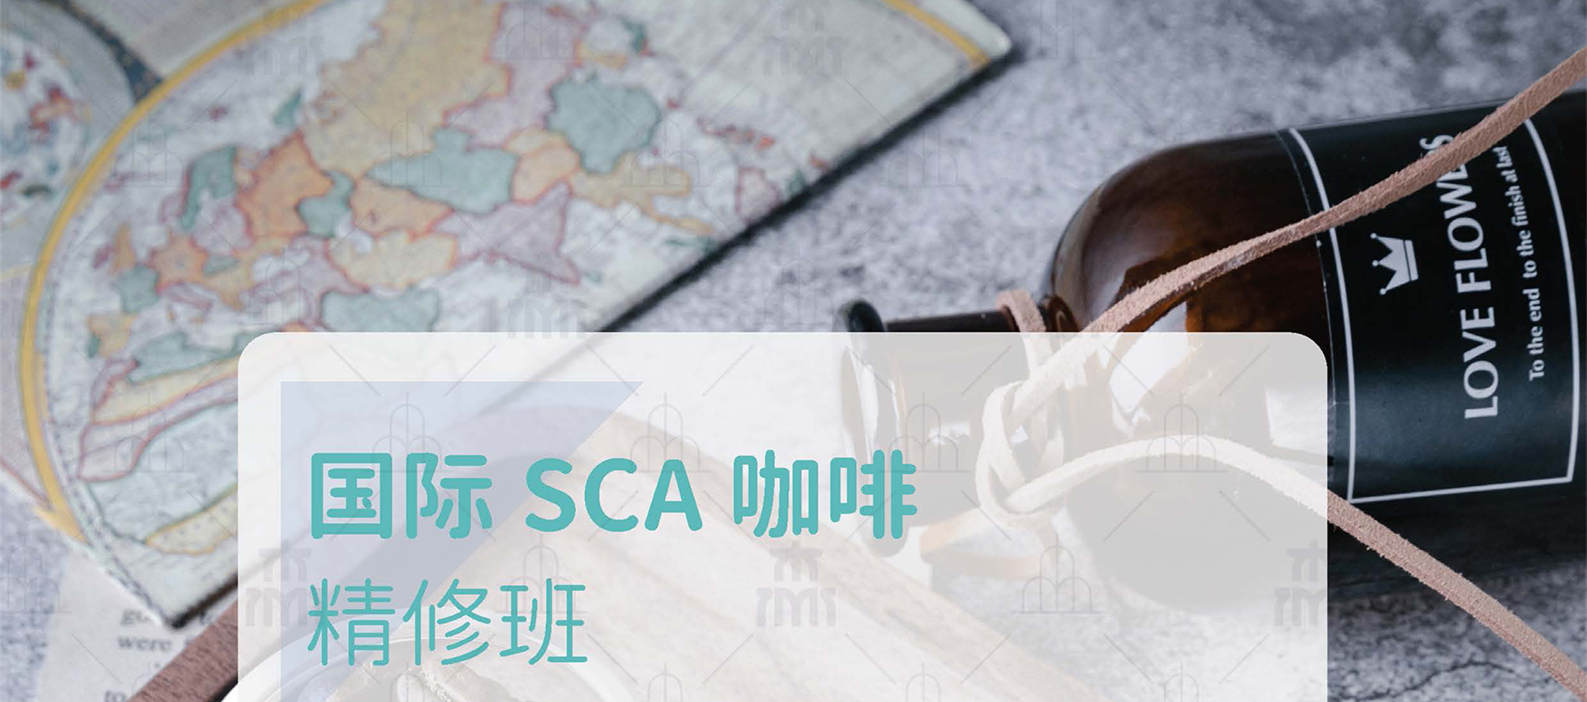 国际SCA咖啡精修班